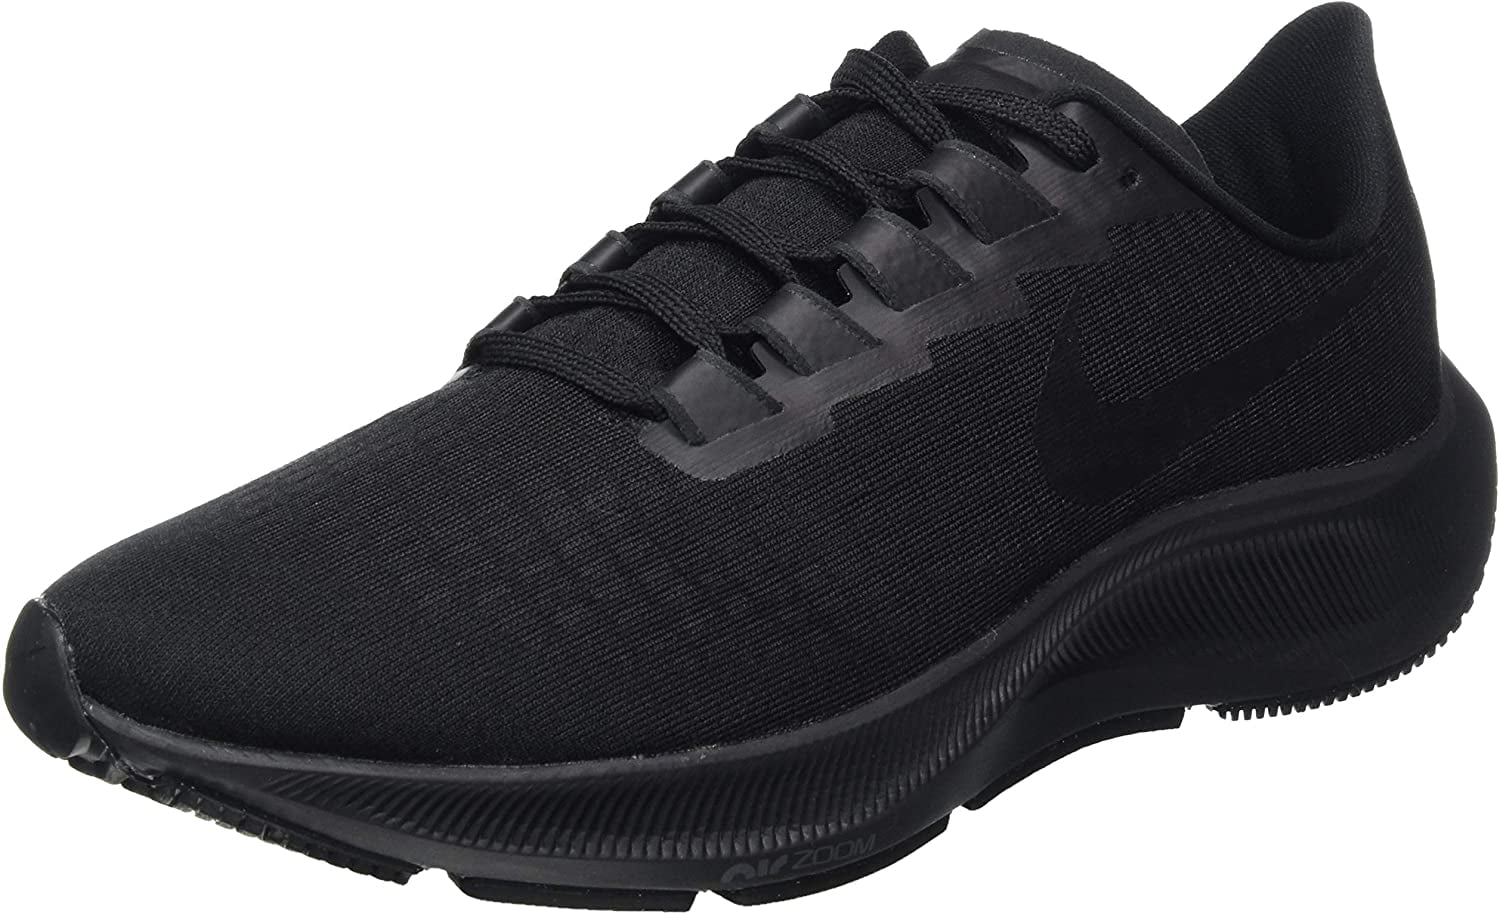 Nike Men's Race Running Shoe, Black Black Dk Smoke Grey, 13